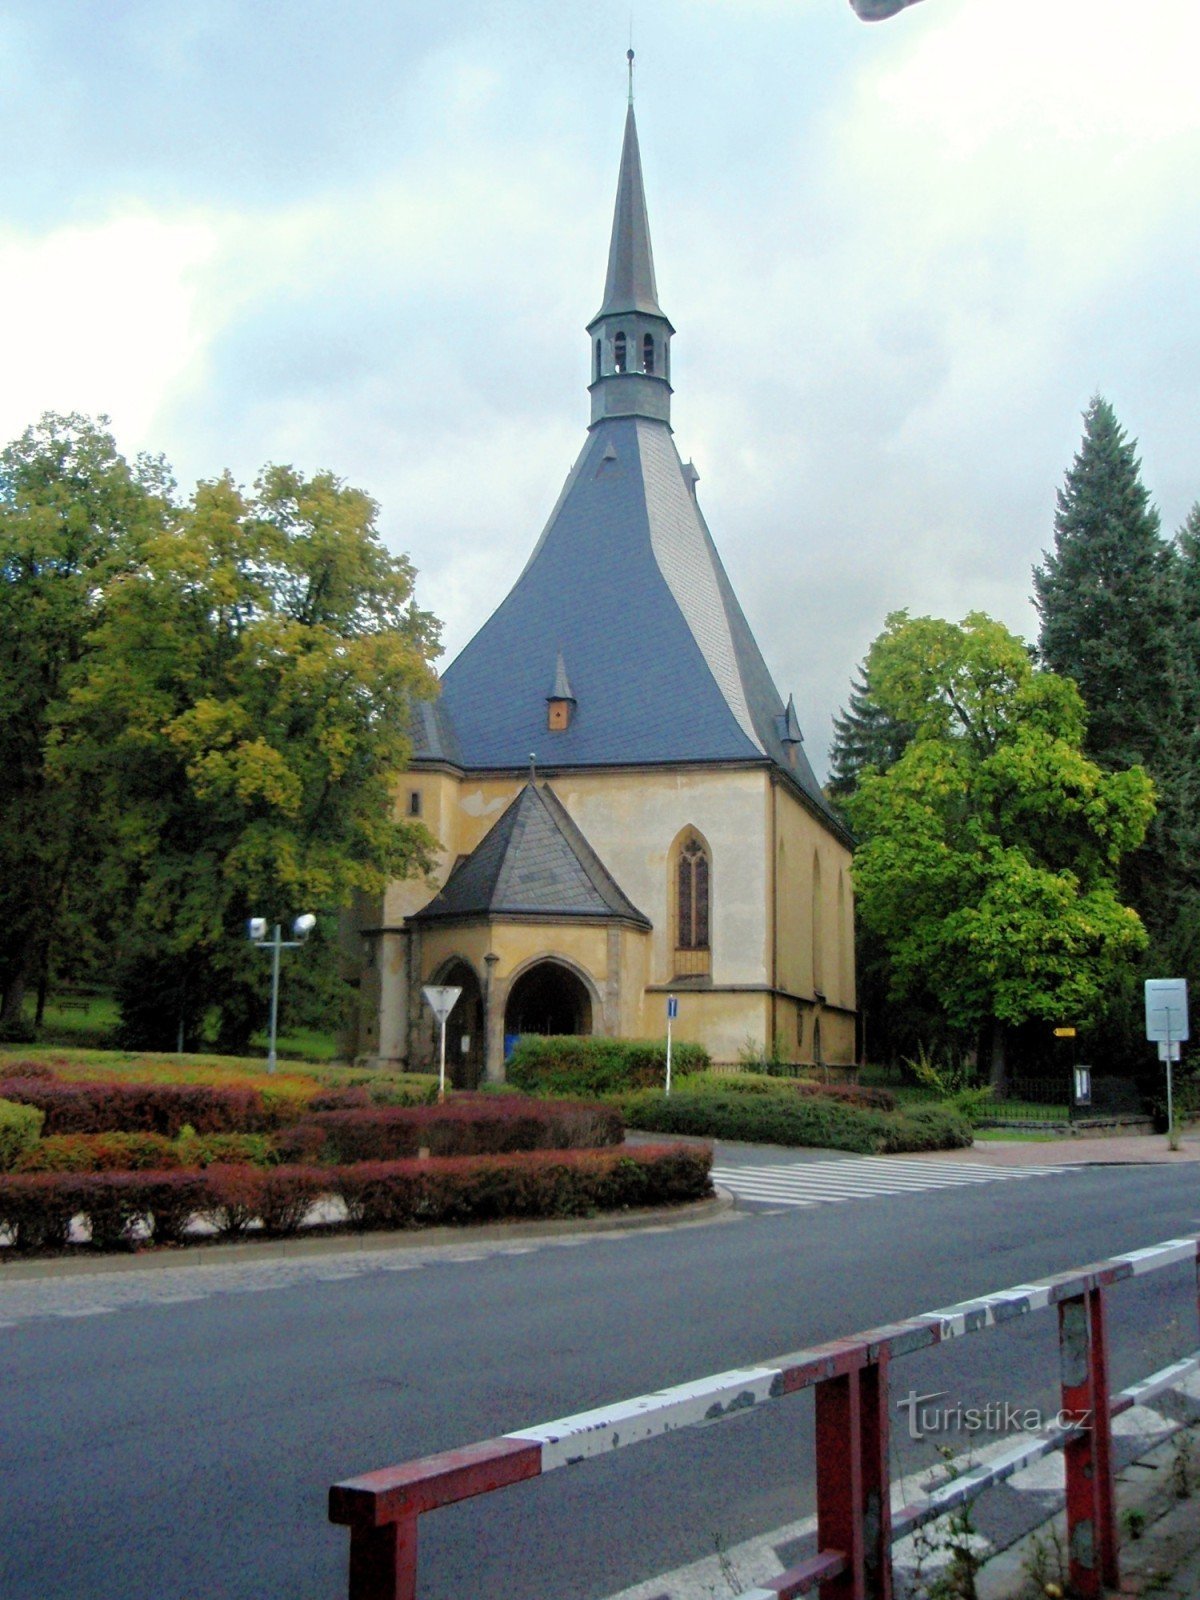 Cerkev Vnebohoda sv. Kriza